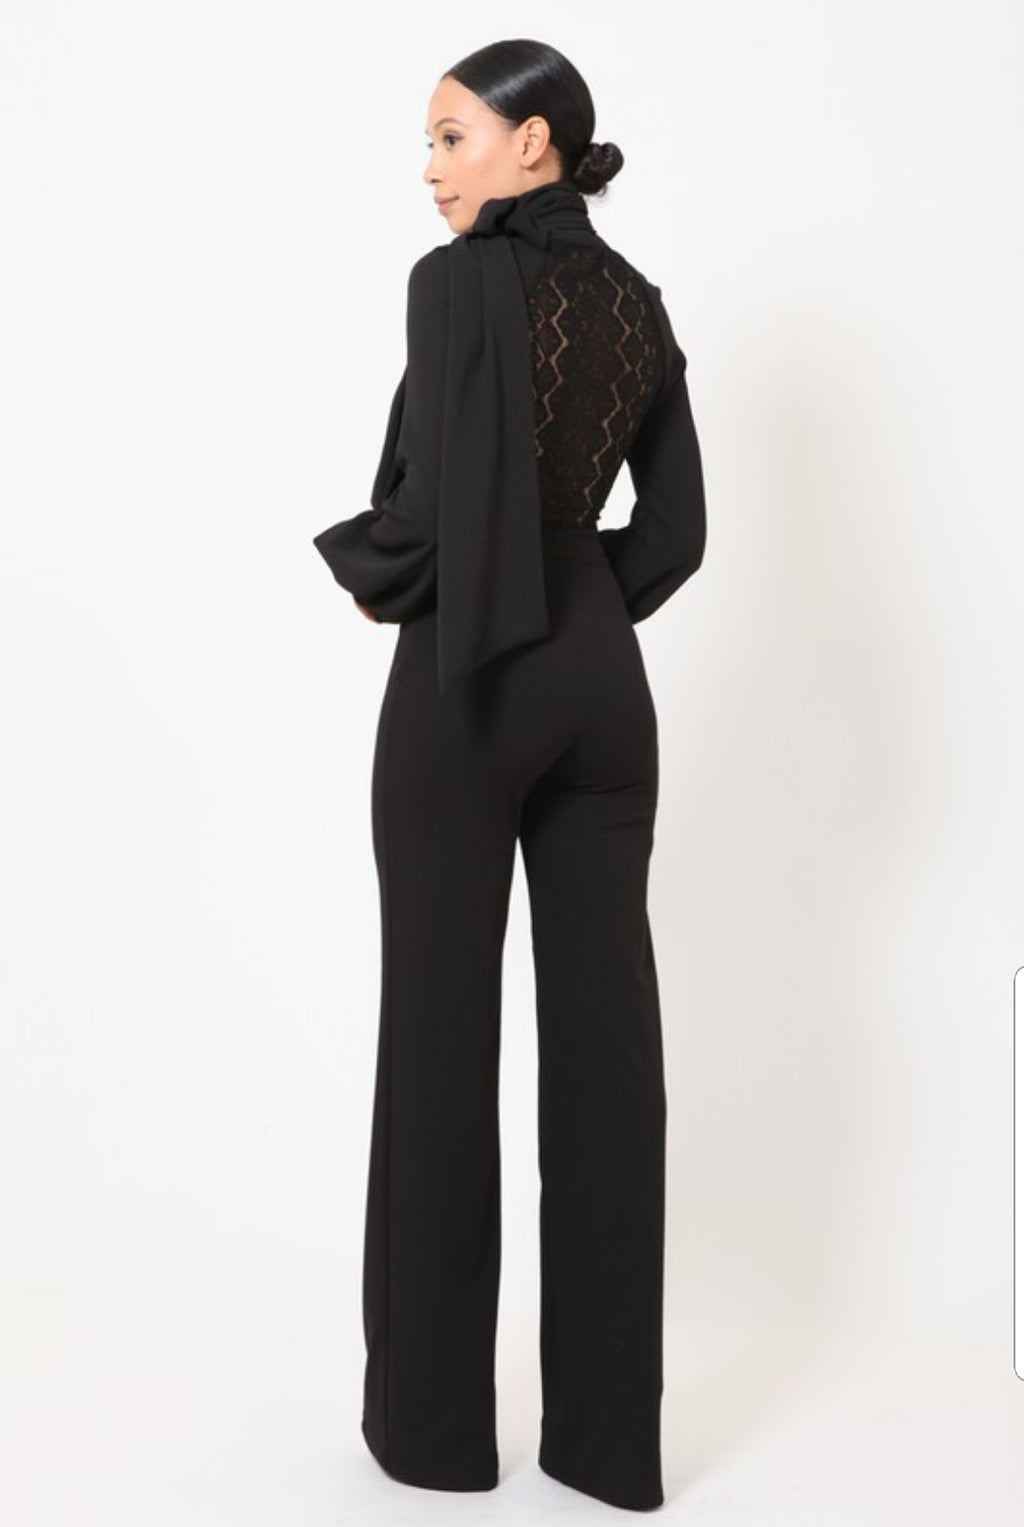 Dior Neck Ribbon Neck Tie Lace Top Long Sleeve Jumpsuit - A' LA' POSH Clothing